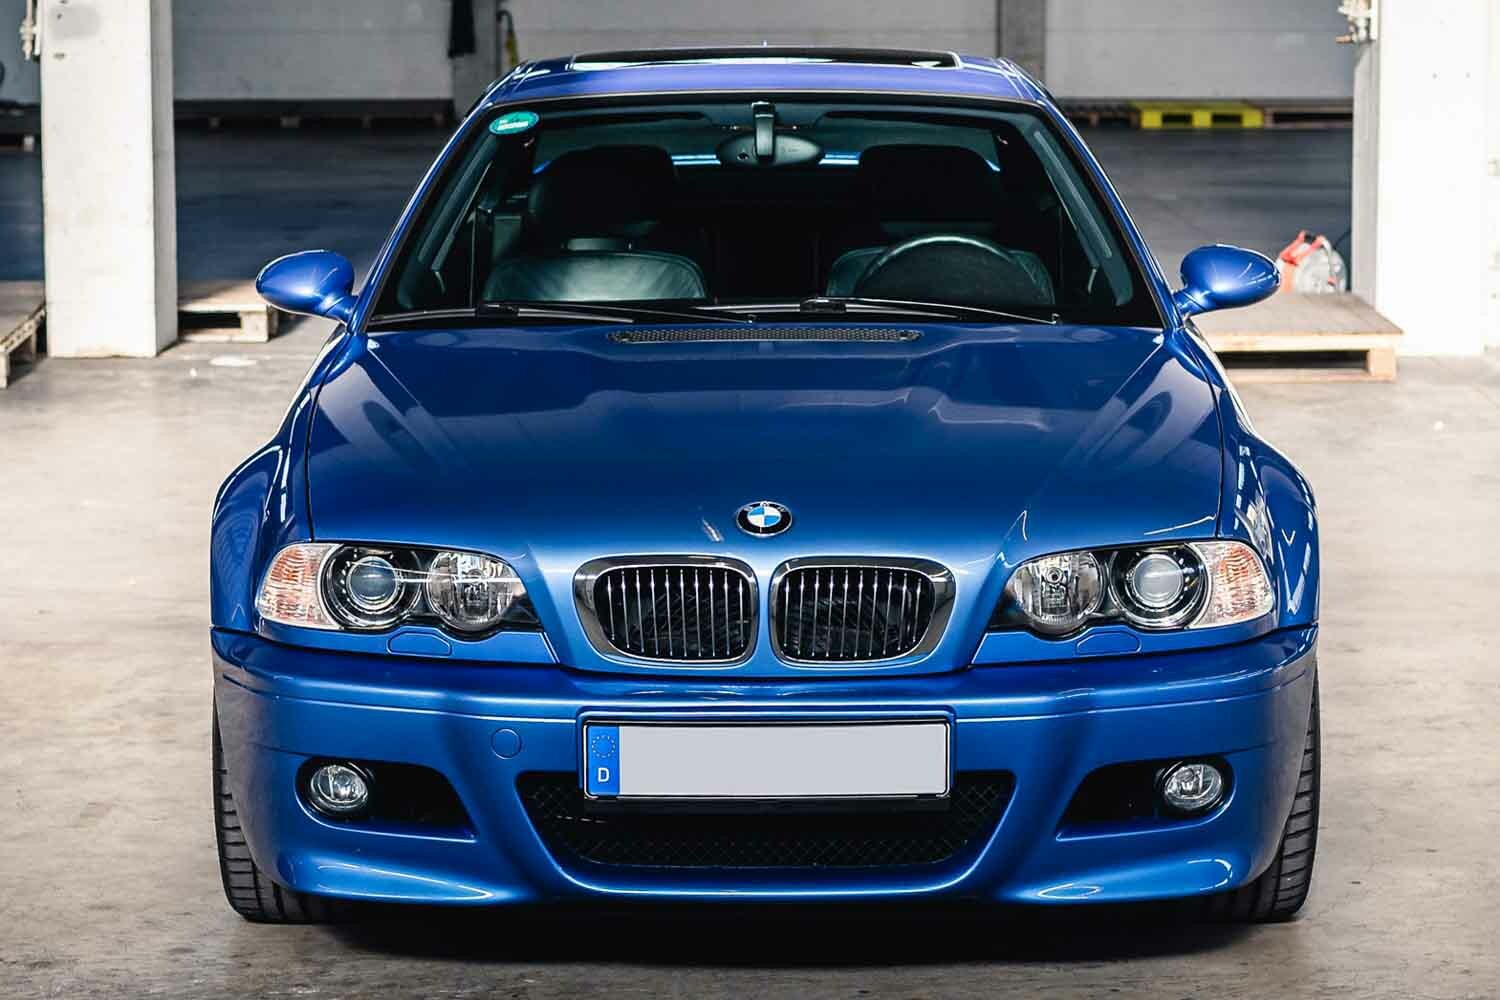 BMW E46「M3」は、ほぼ新車価格の860万円！ ひと頃に比べるとかなり高額でも先行投資として良質車は今手に入れたい